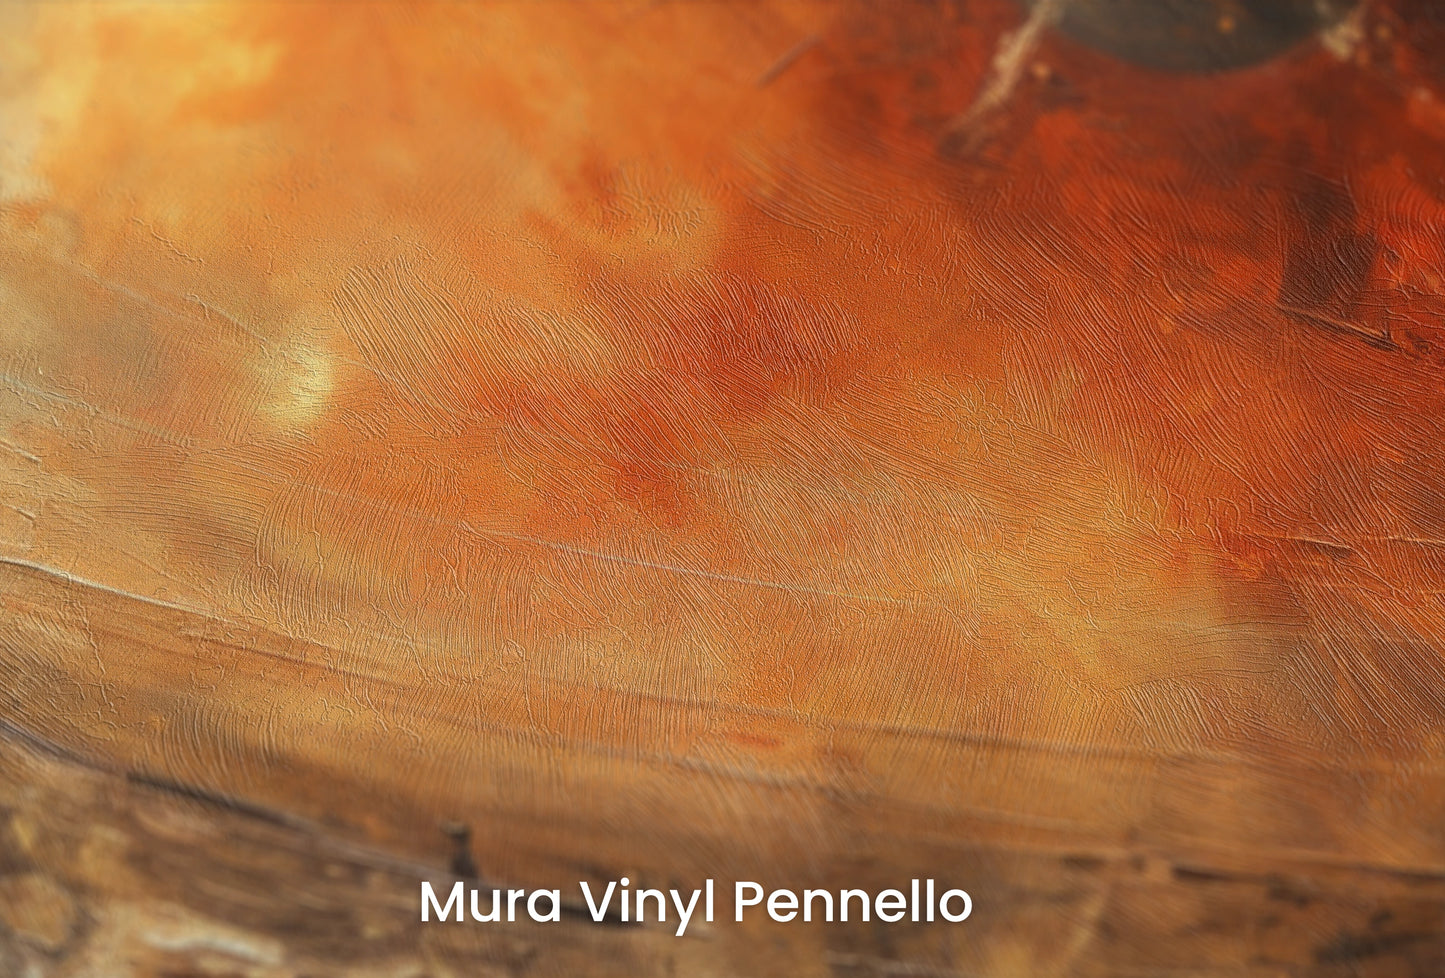 Zbliżenie na artystyczną fototapetę o nazwie Celestial Journey na podłożu Mura Vinyl Pennello - faktura pociągnięć pędzla malarskiego.